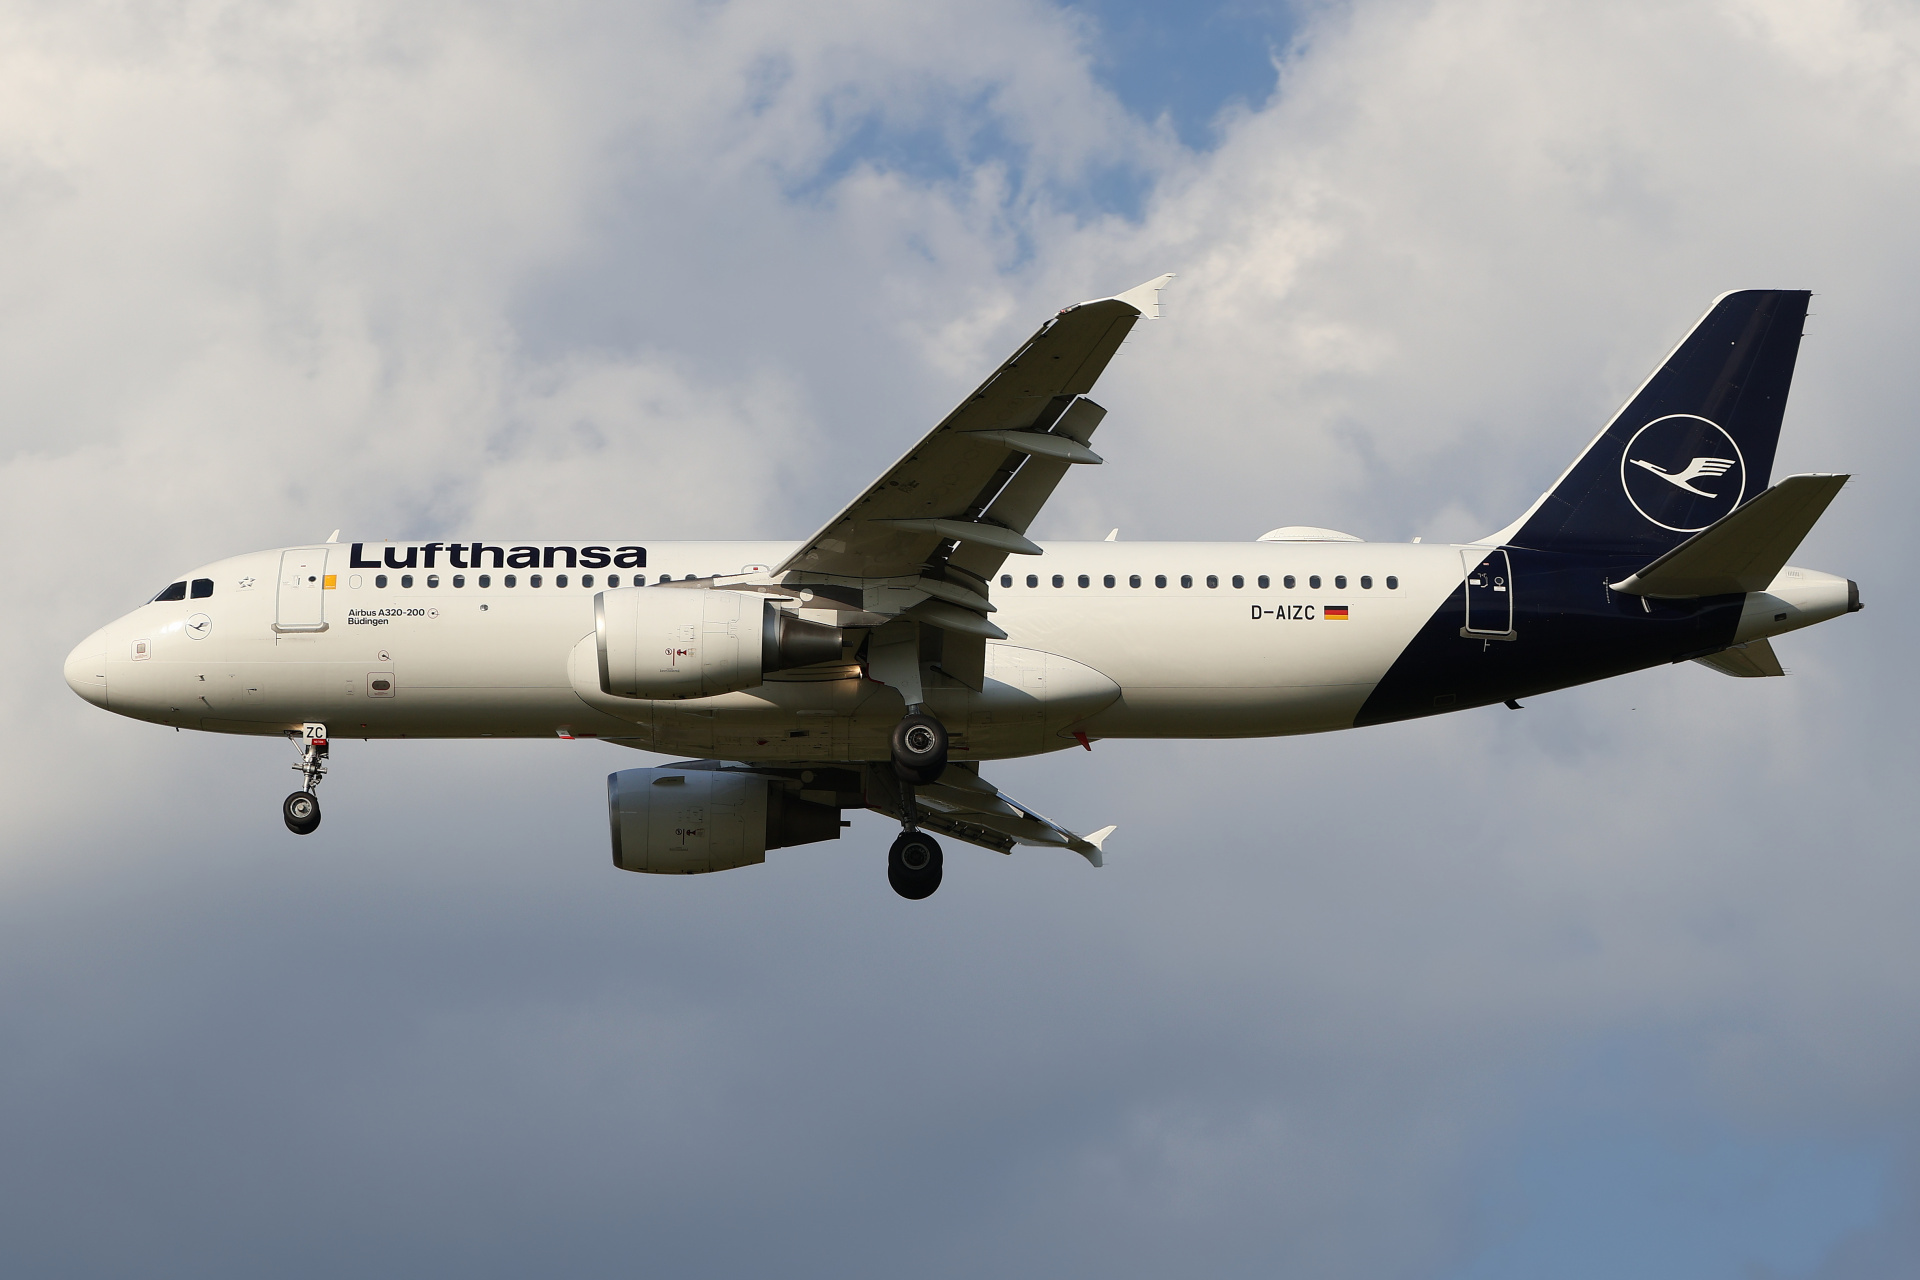 D-AIZC (Aircraft » EPWA Spotting » Airbus A320-200 » Lufthansa)